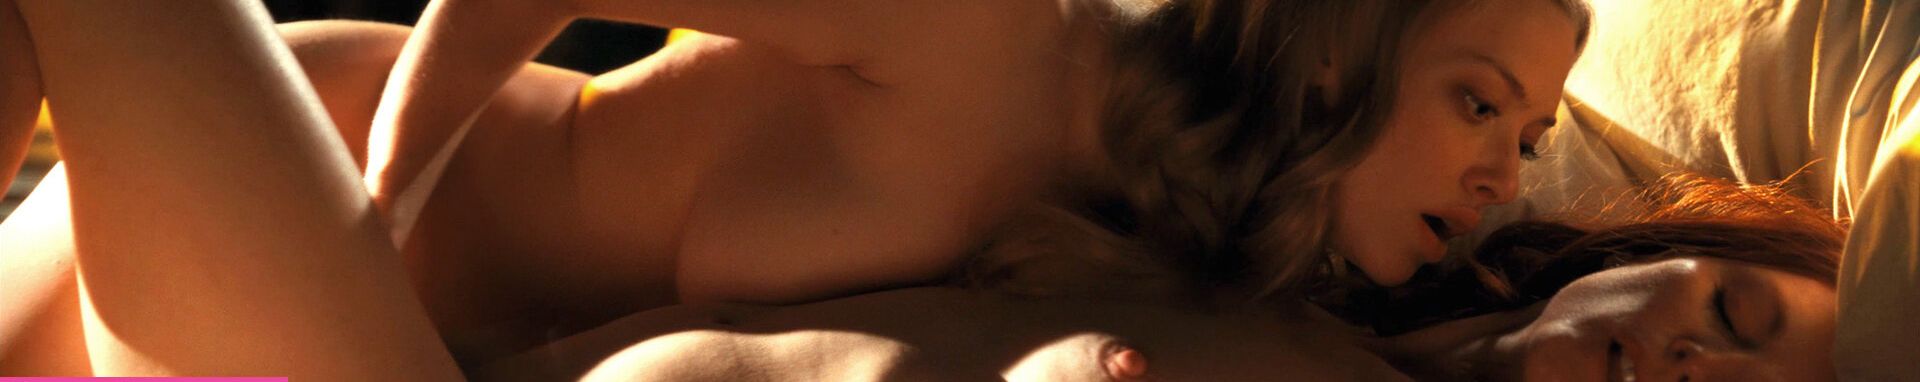 Amanda Seyfried nuda #108036500